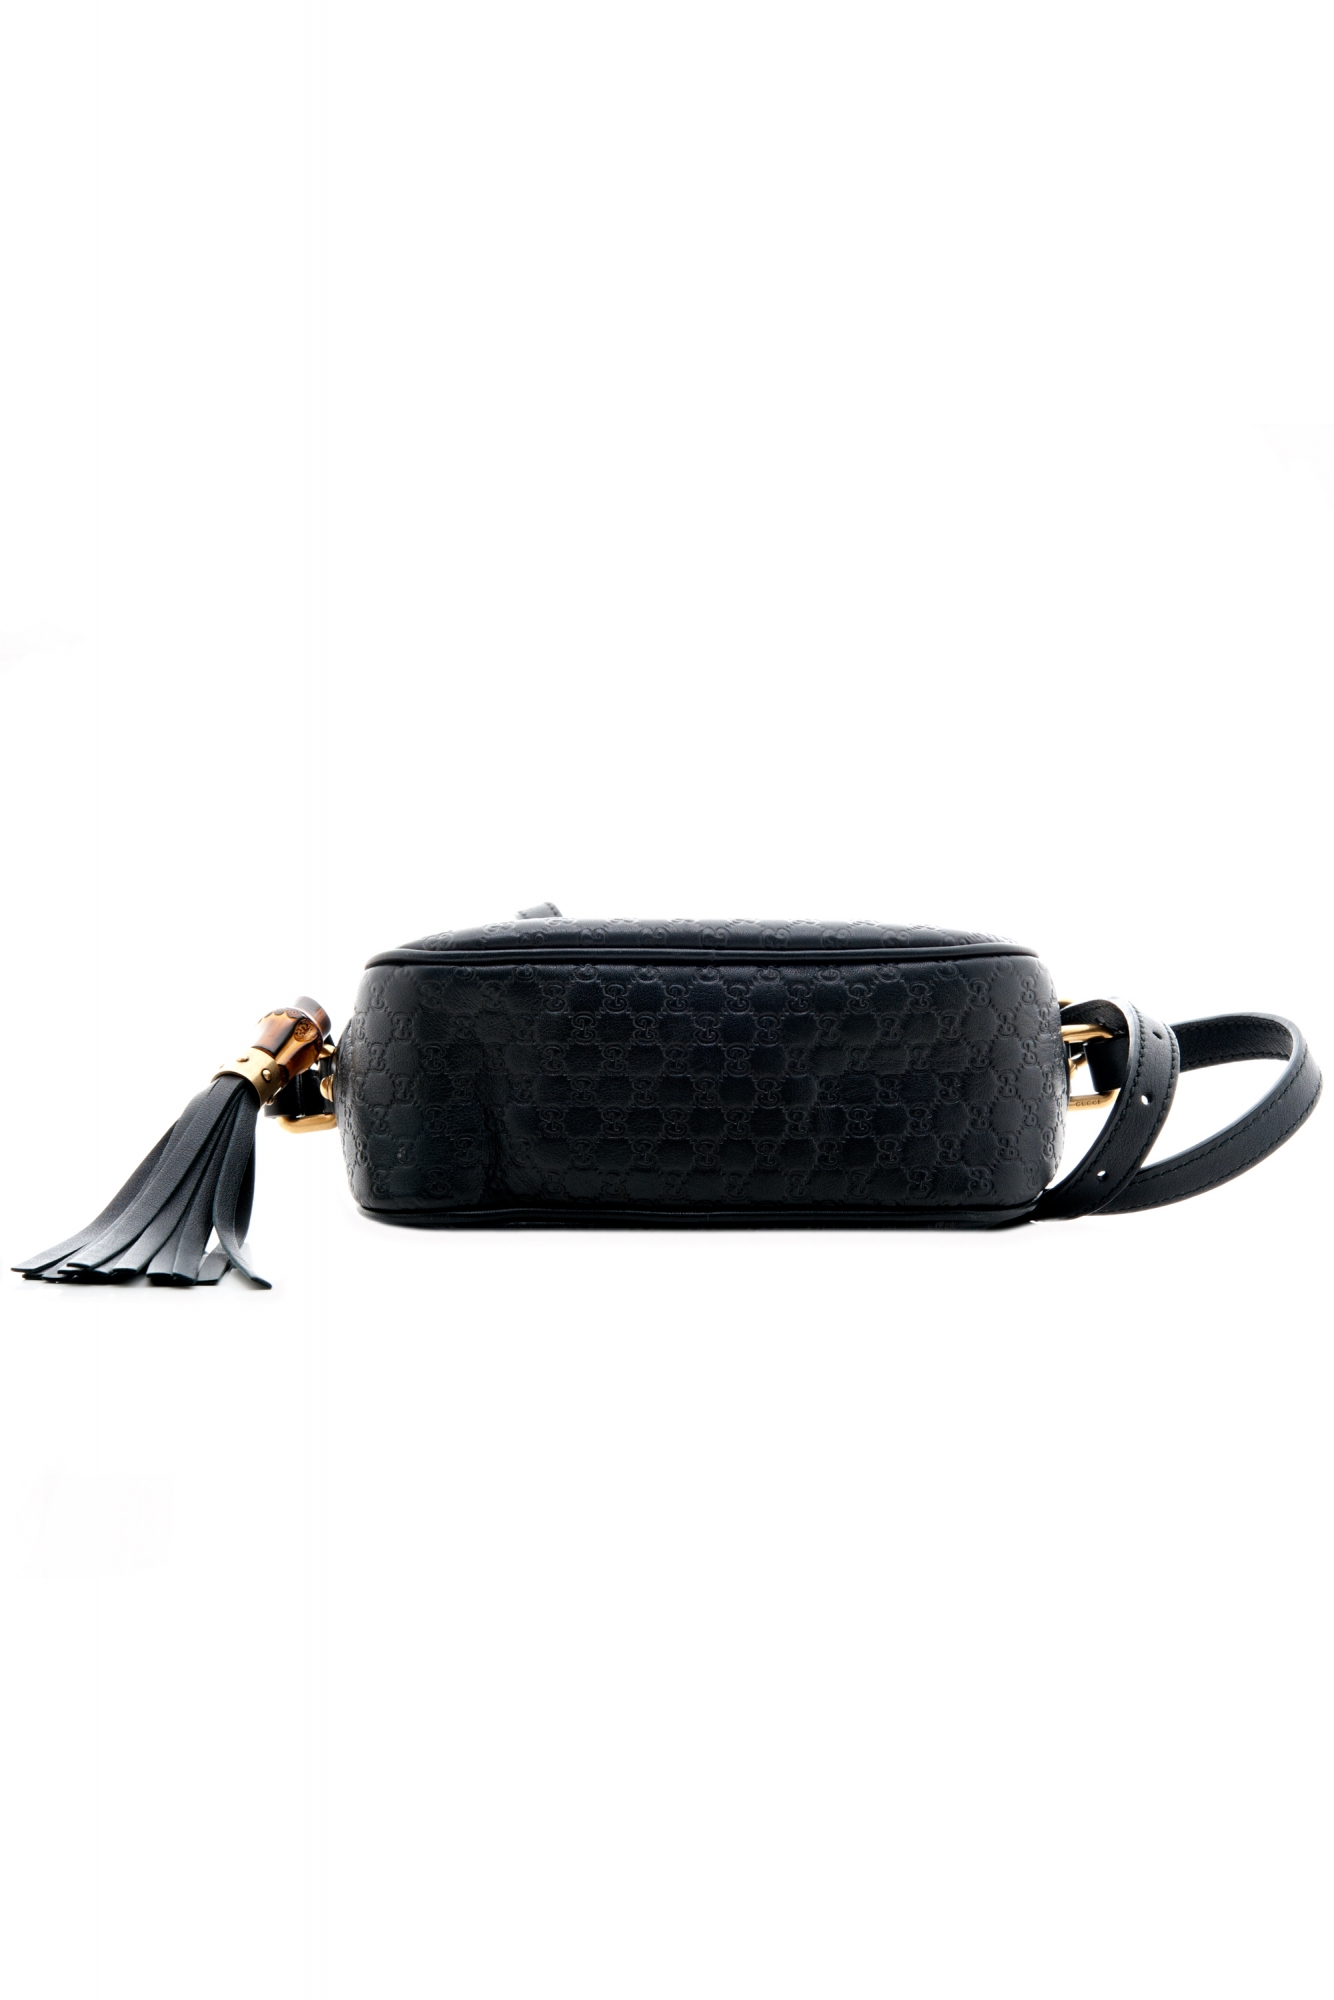 Gucci Disco Bag in Black Micro Guccissima - Gucci | La Doyenne